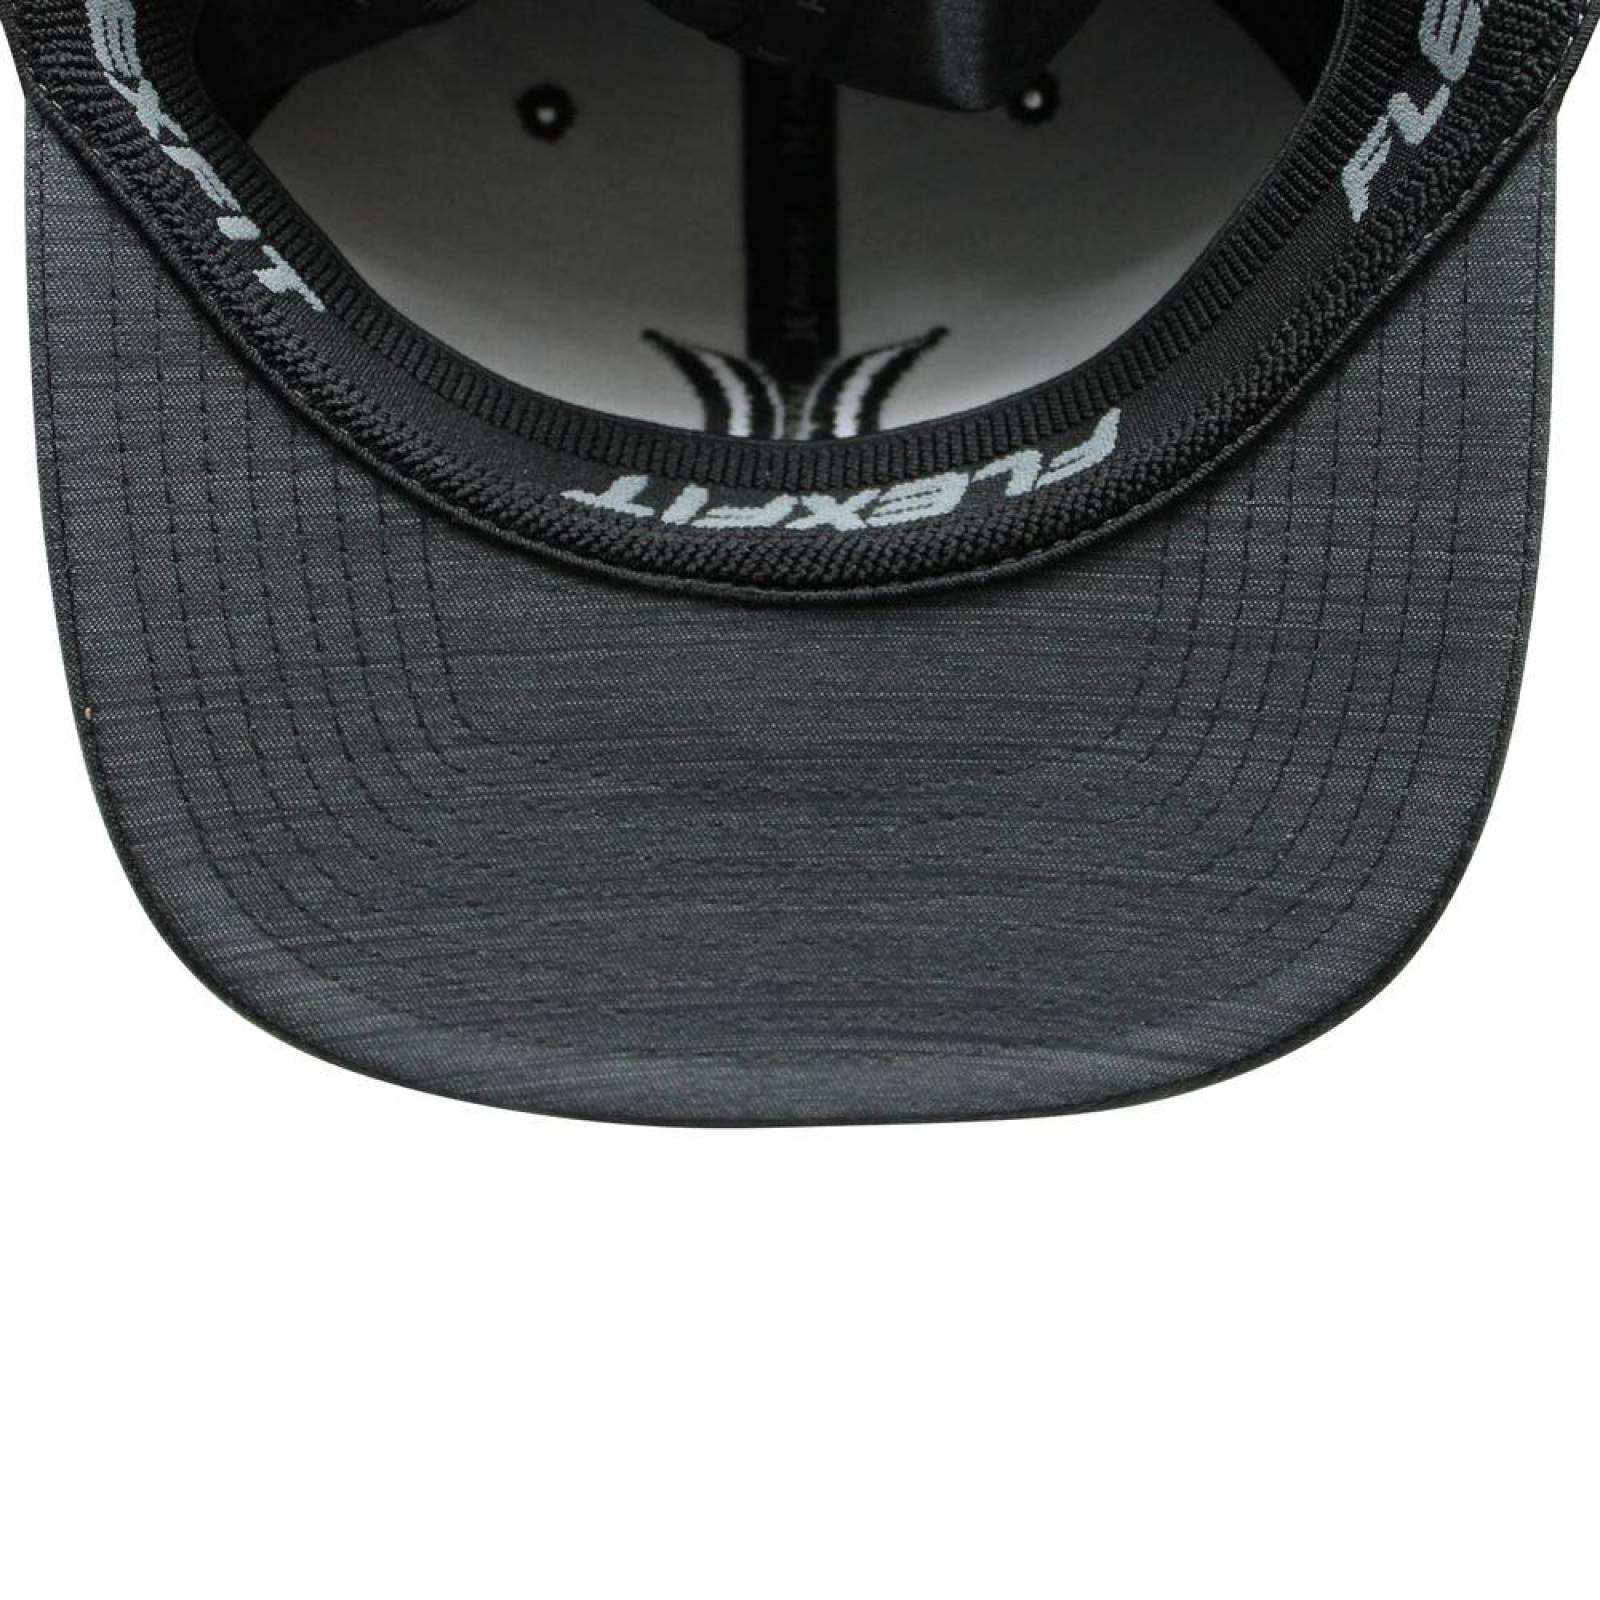 Gorra Hurley Black Textures Hat Gris 